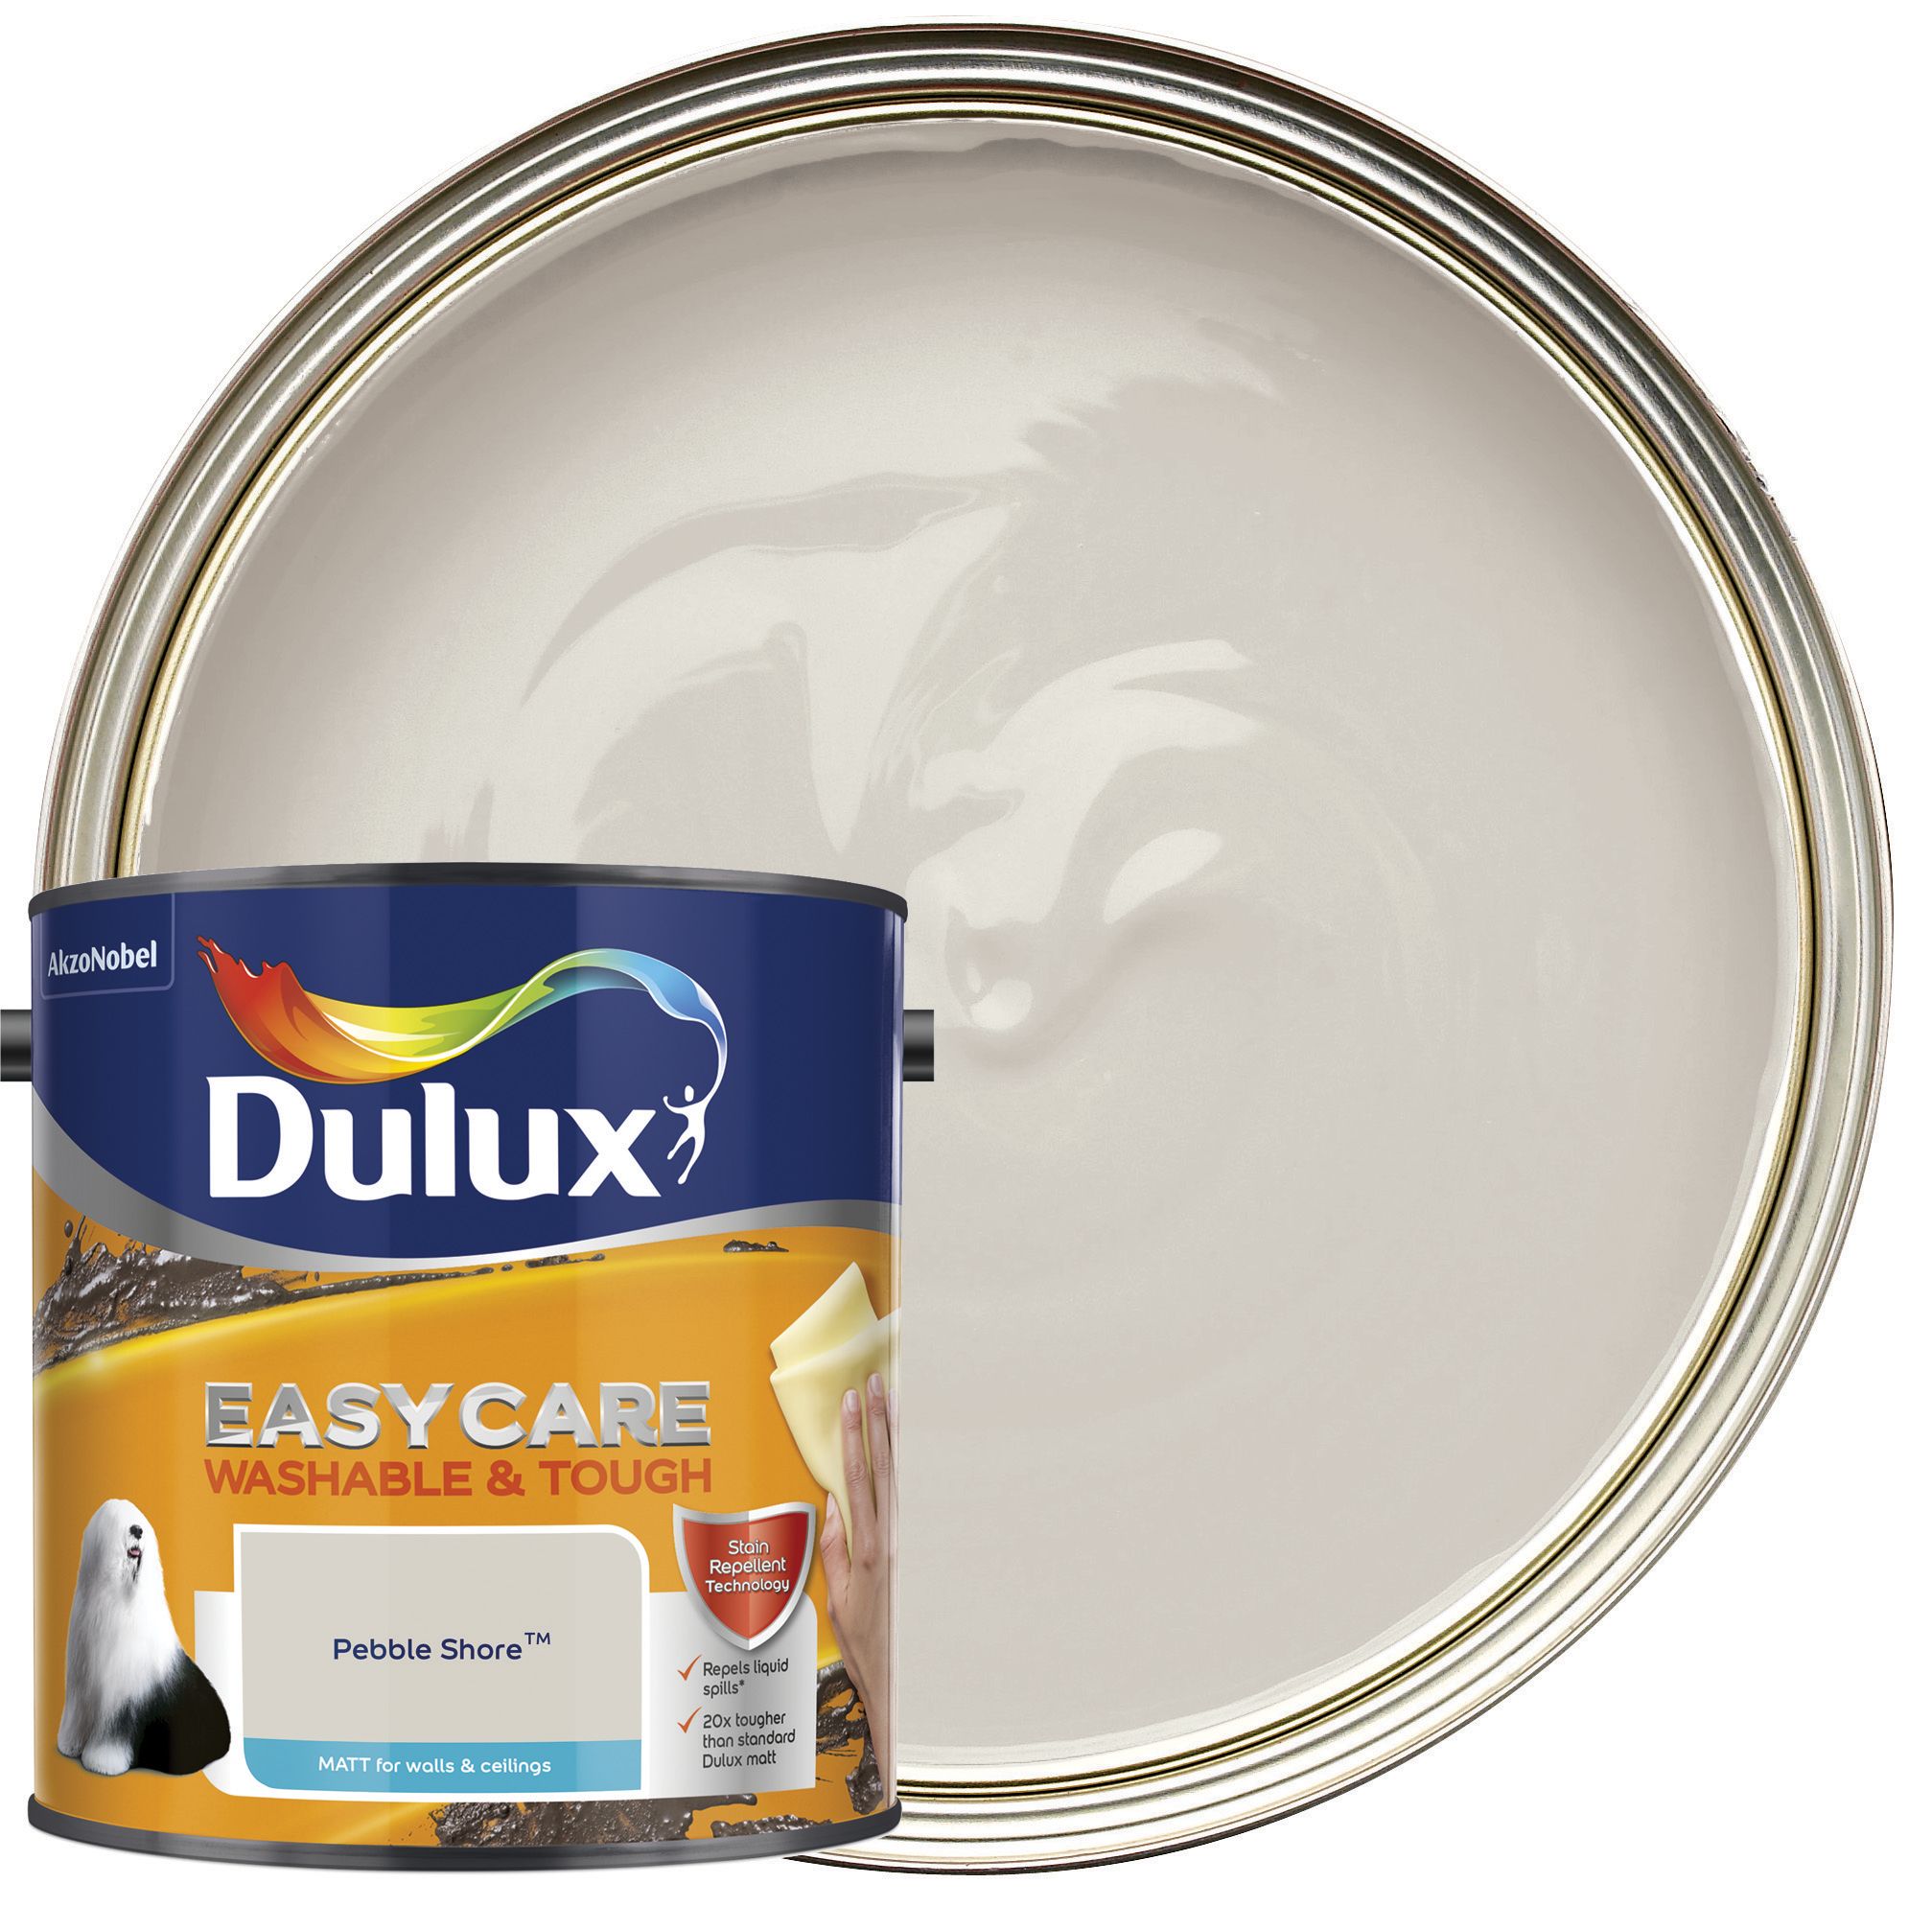 Dulux Easycare Washable & Tough Matt Emulsion Paint - Pebble Shore - 2.5L